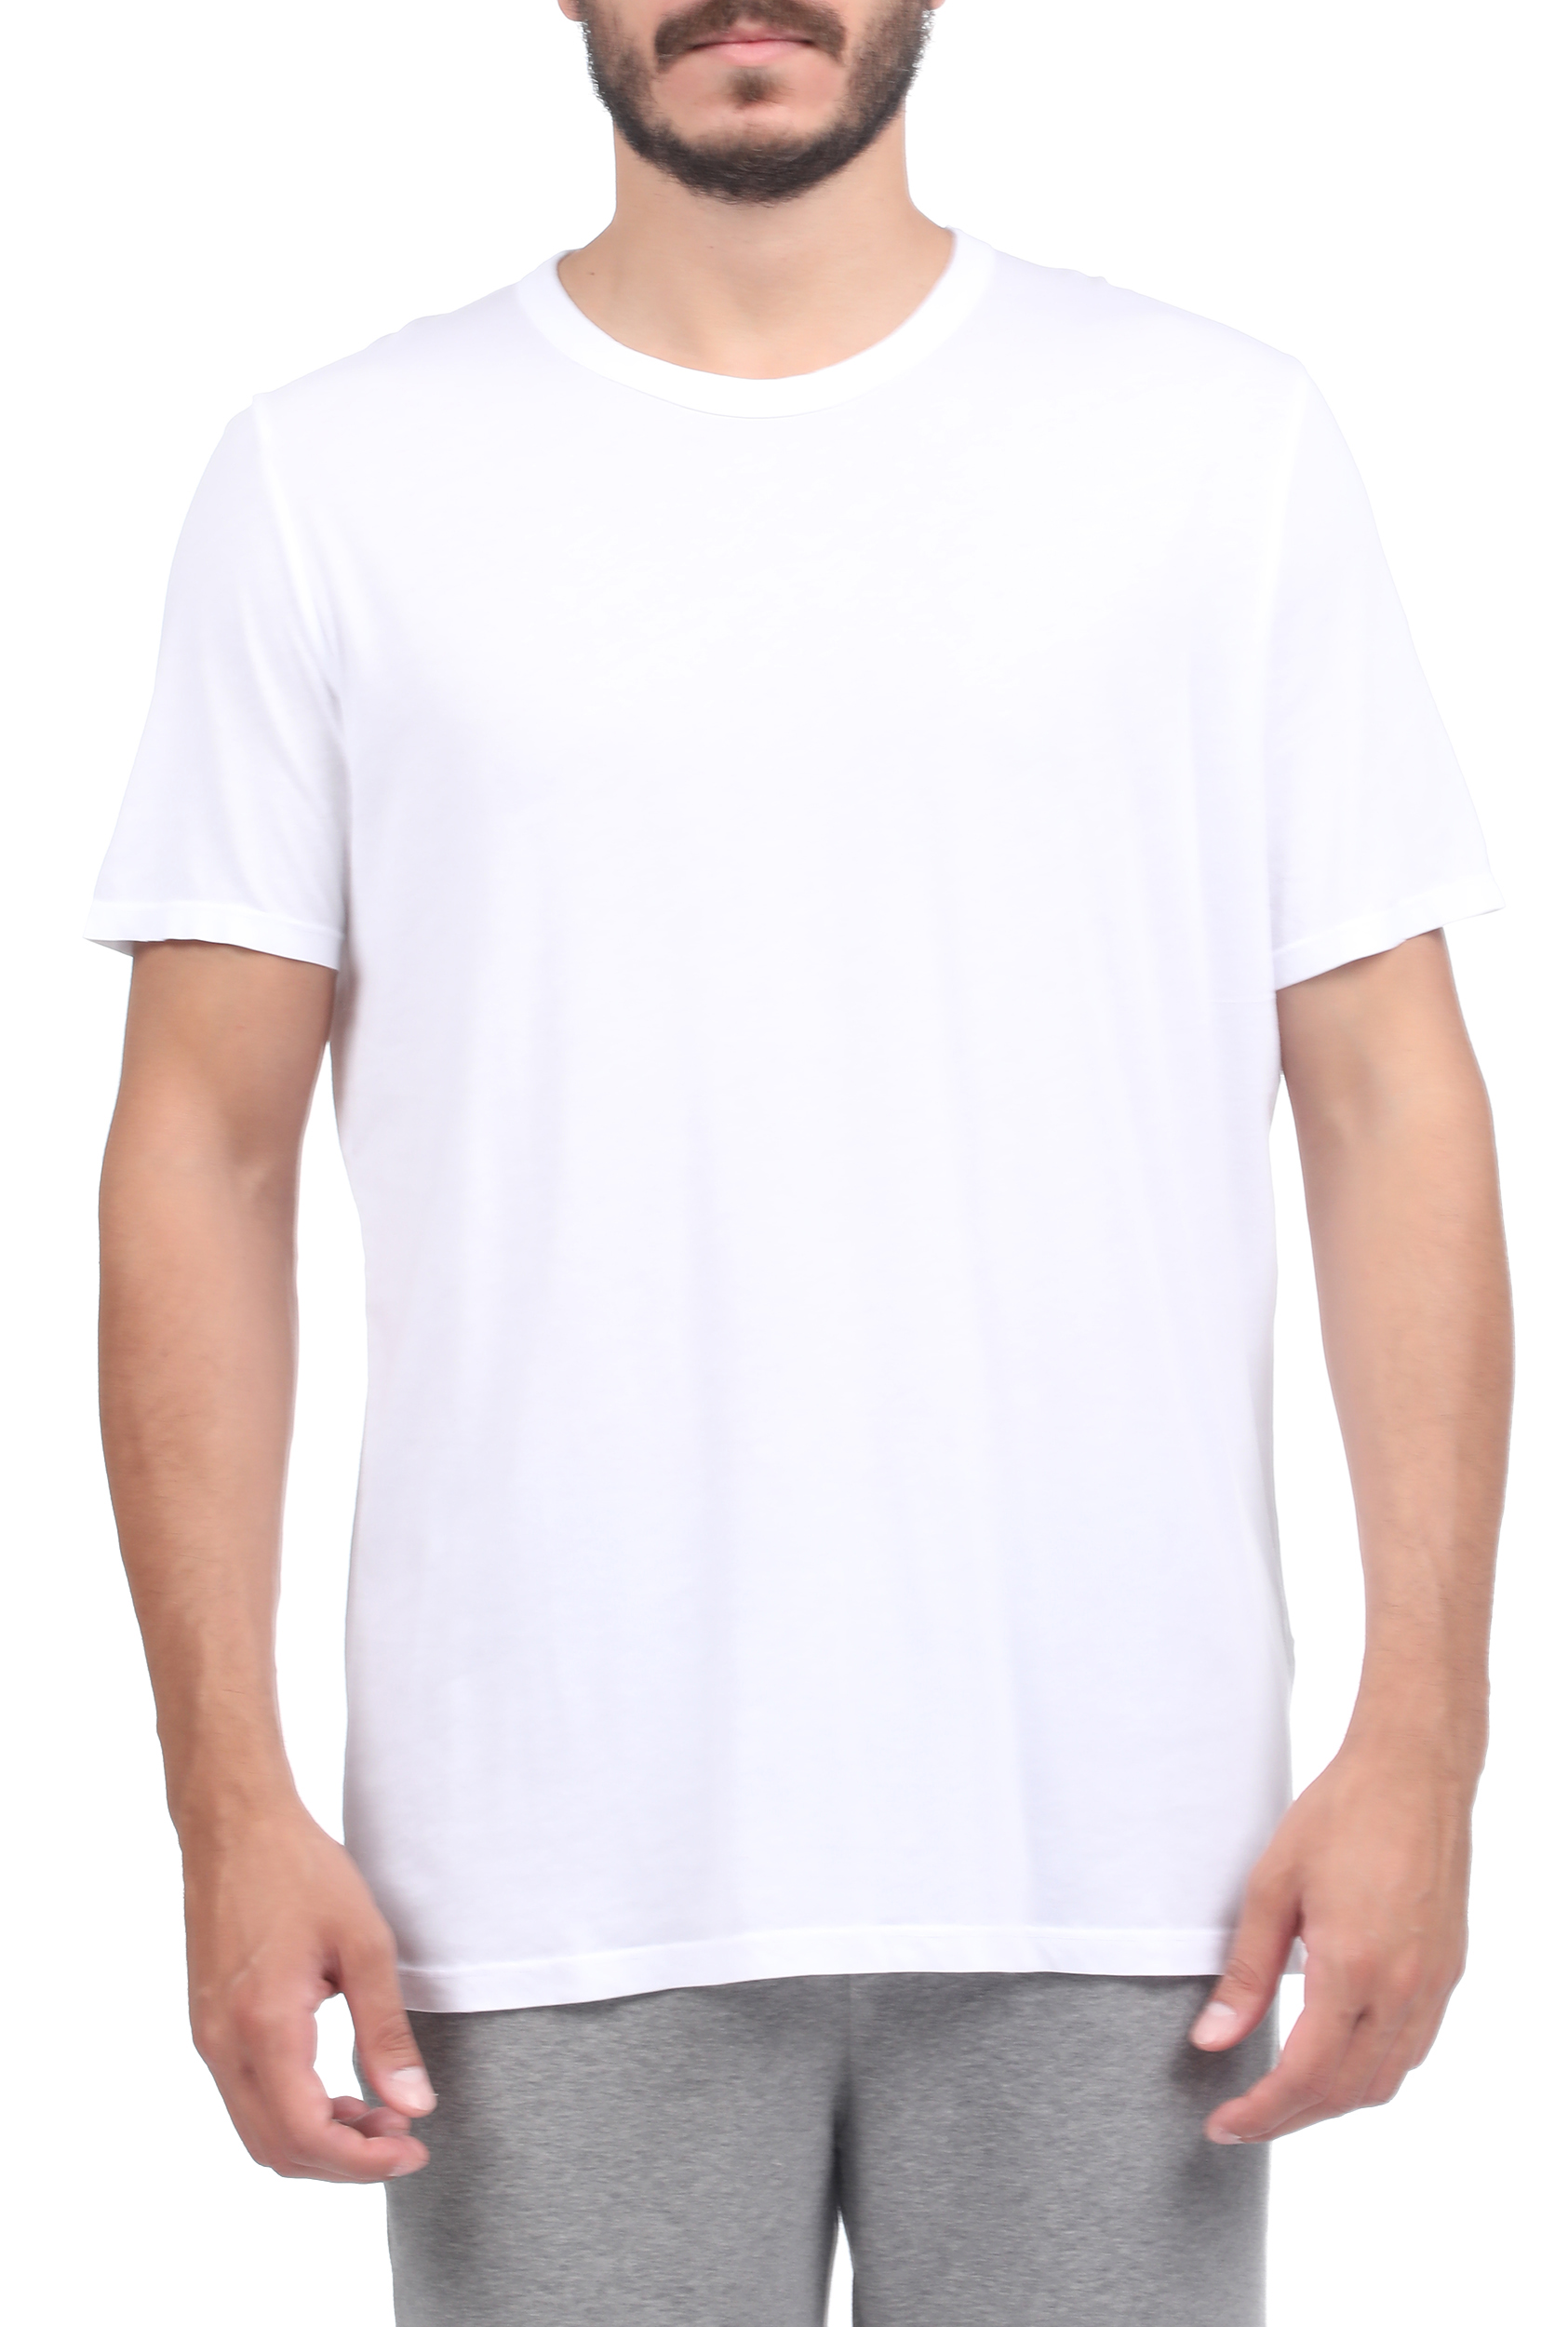 Ανδρικά/Ρούχα/Μπλούζες/Κοντομάνικες AMERICAN VINTAGE - Ανδρικό t-shirt AMERICAN VINTAGE λευκό